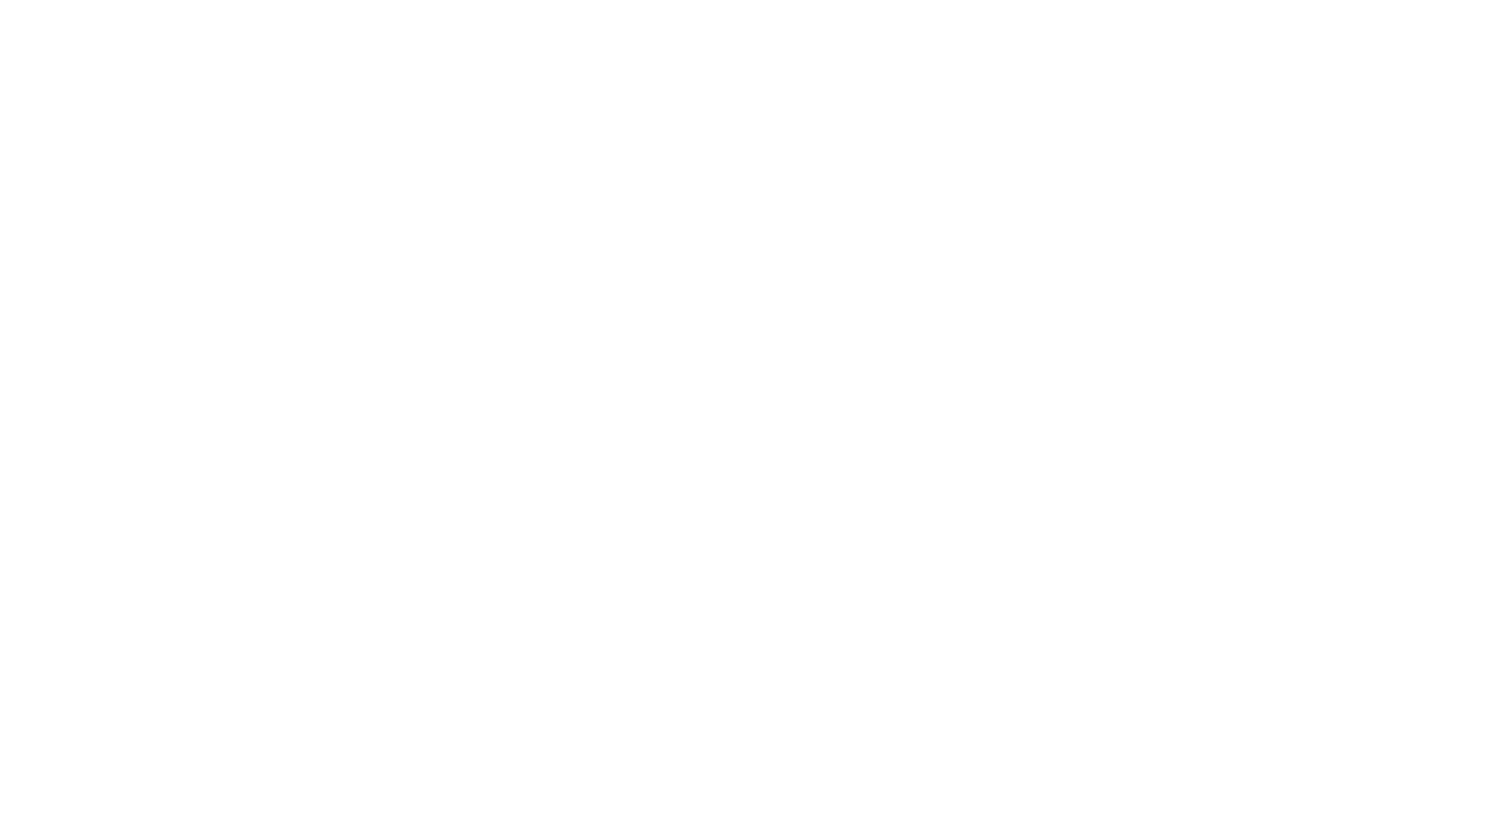 Devyn Bryant MSN, RN, CRRN, NE-BC, LLC